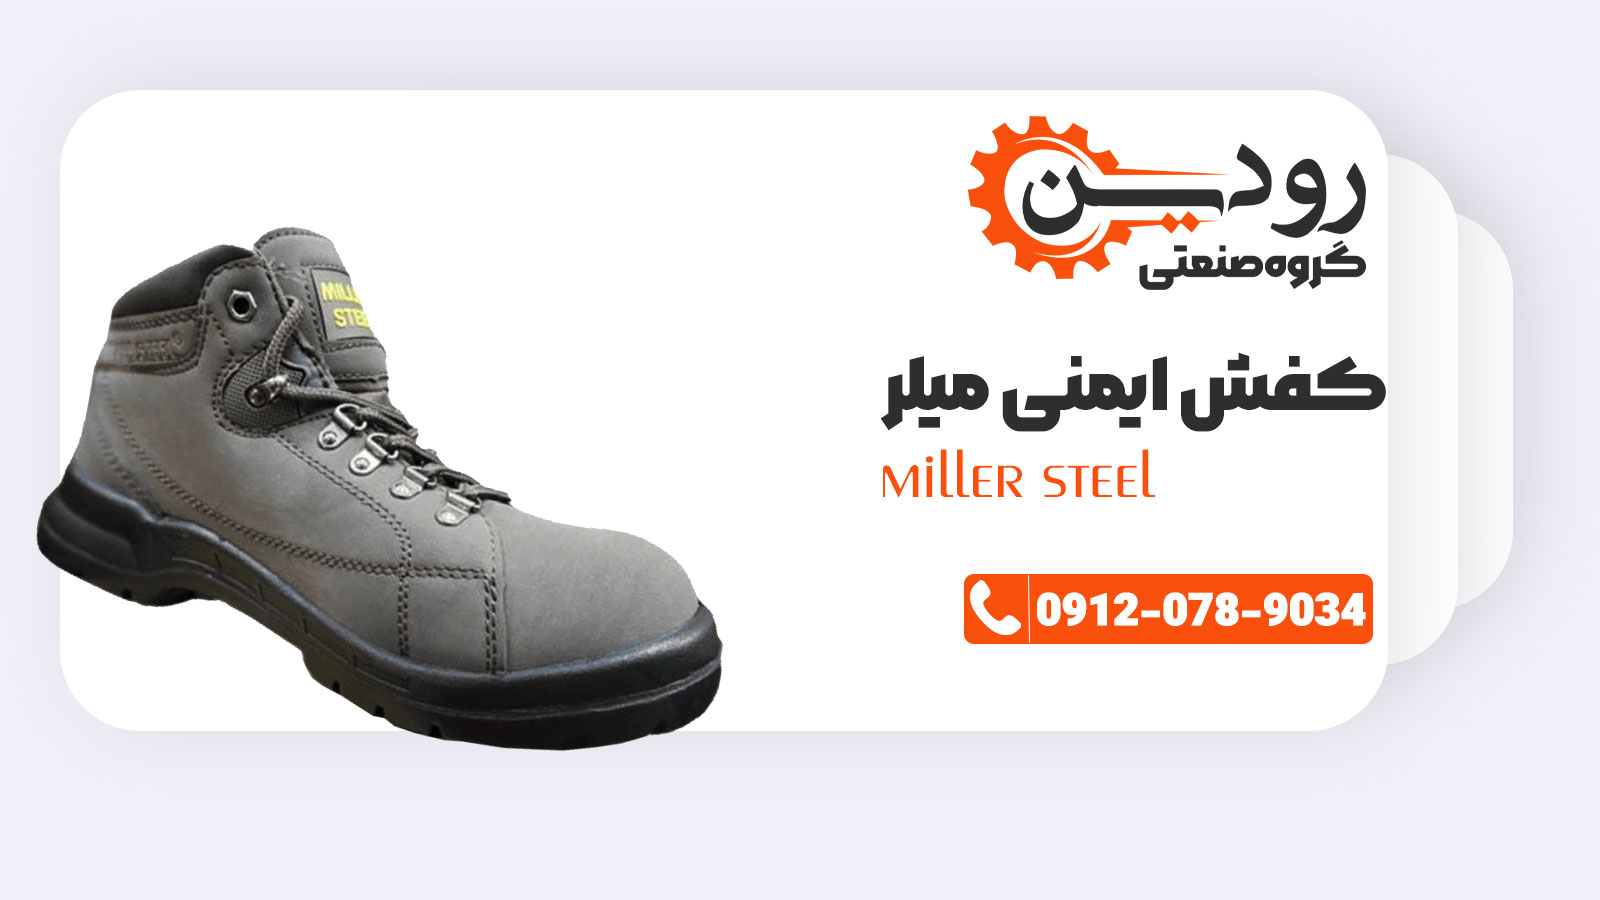 قیمت کفش ایمنی میلر نسبت به کفش های ایرانی بسیار مناسب است.